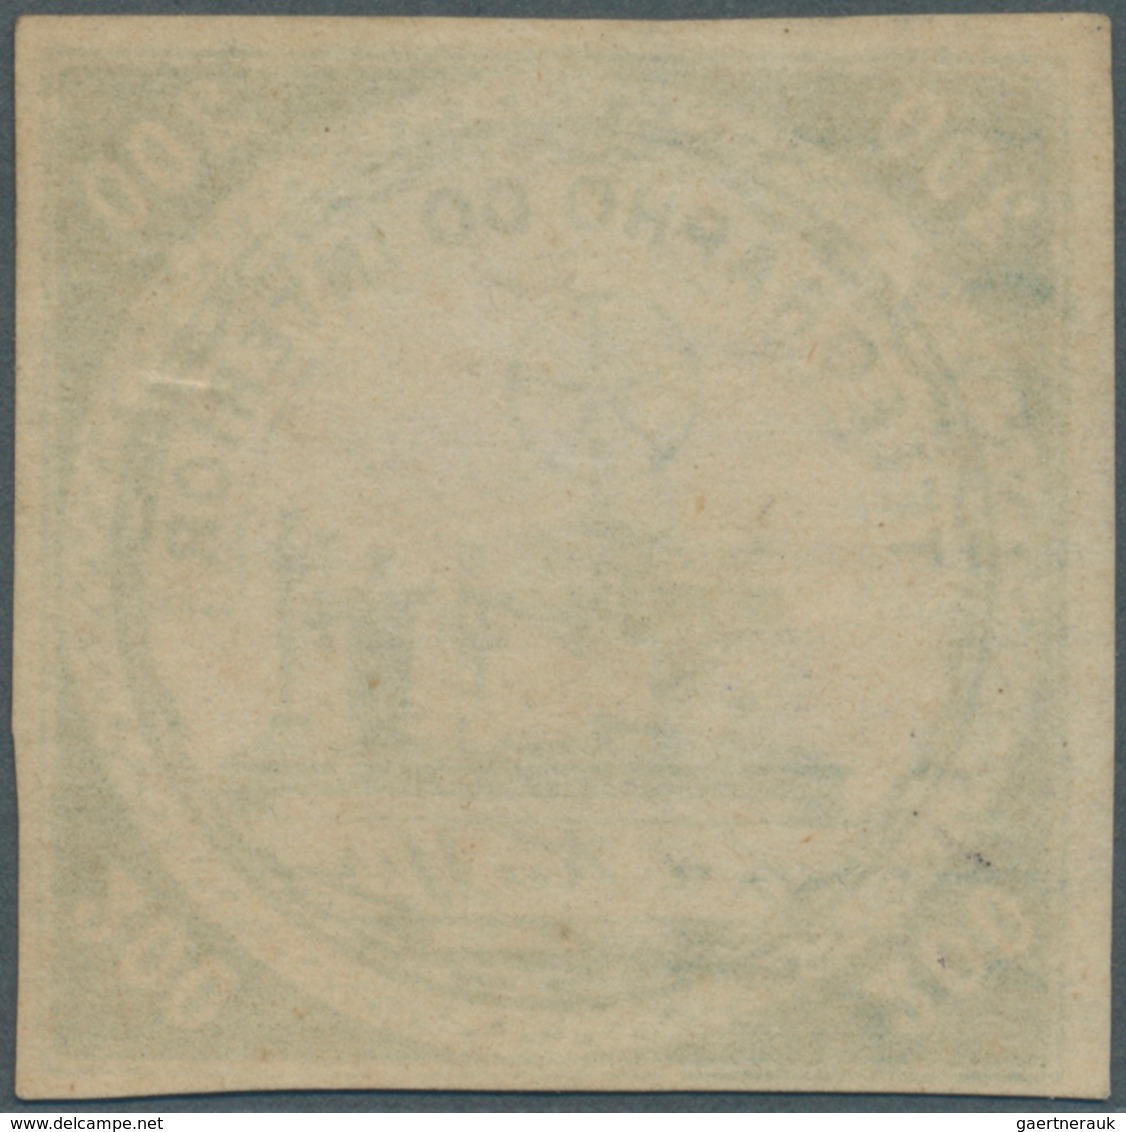 00586 Brasilien - Telegrafenmarken: 1873, 200r. Yellow-green, Wm "Lacroix Freres", Fresh Colour, Full Marg - Telegrafo